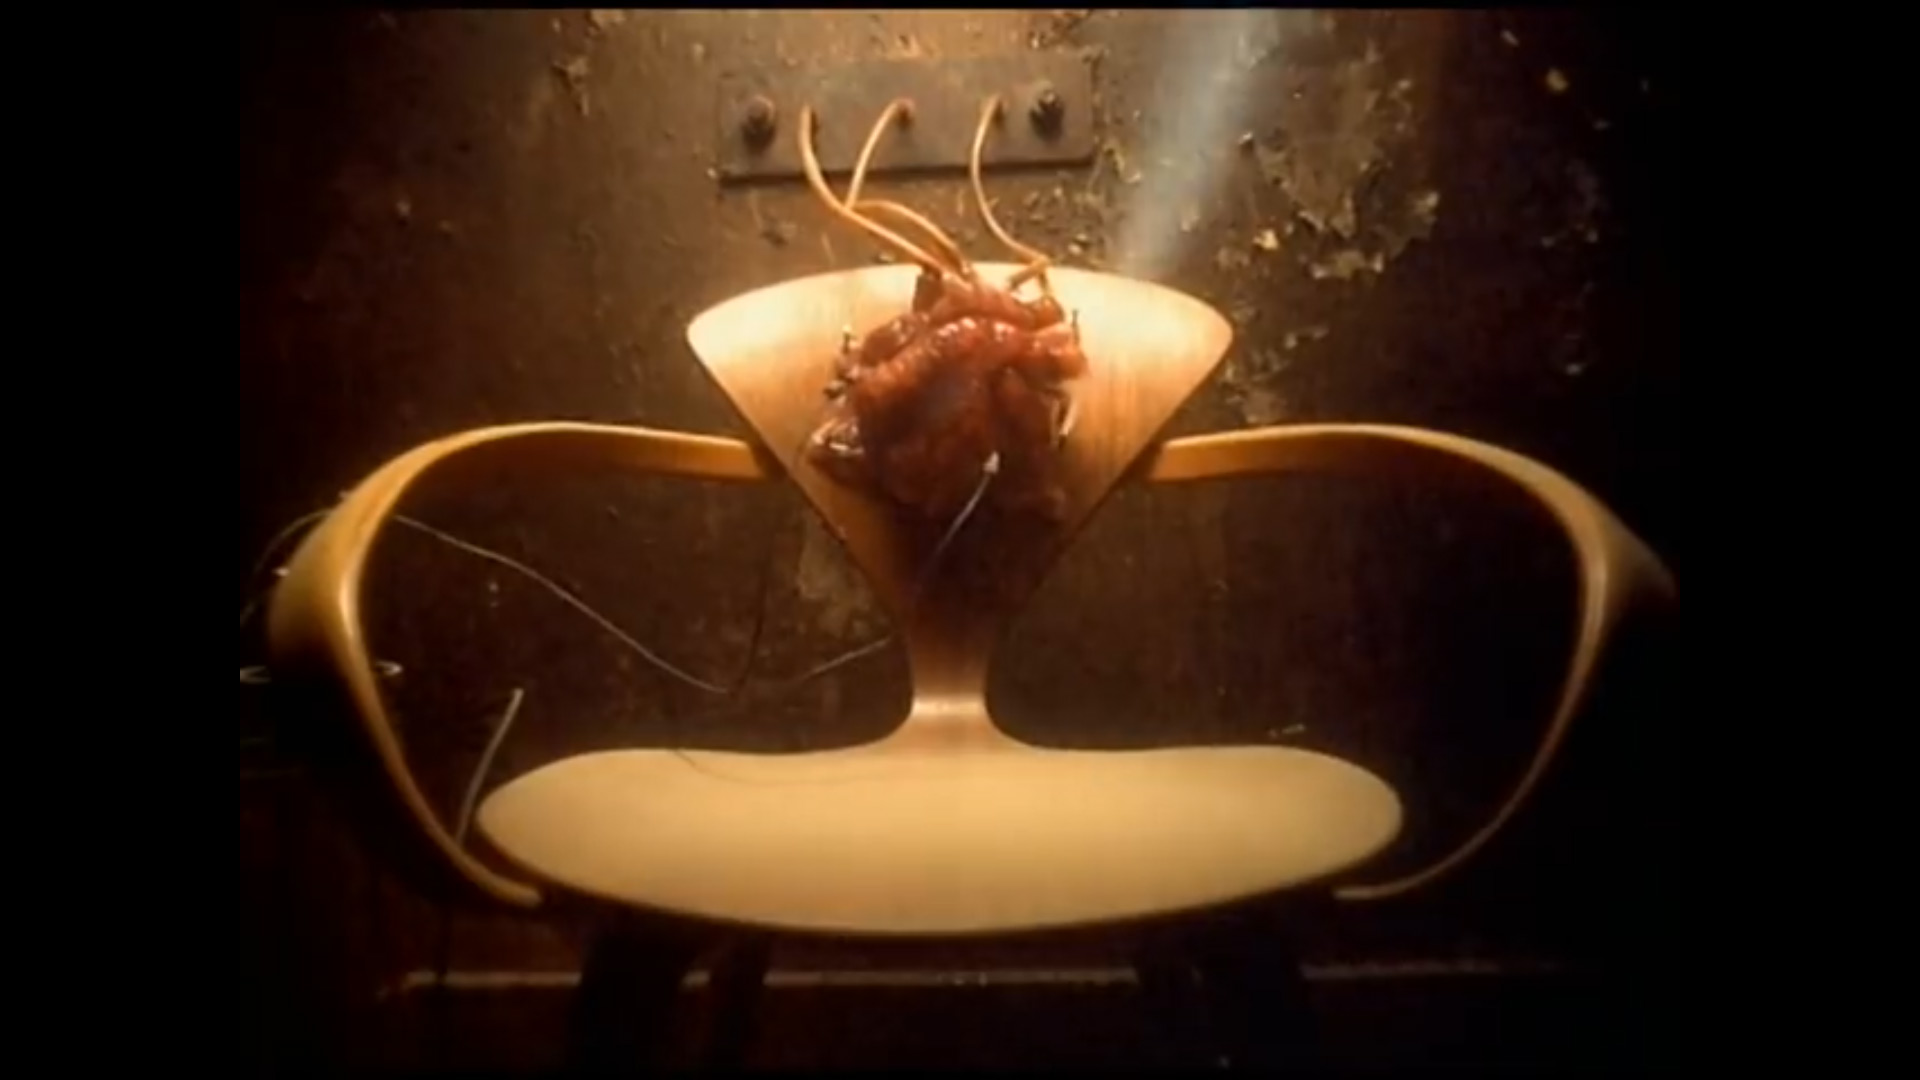 Stillframe del video de música "Closer" - Nine Inch Nails, dirección Mark Romanek, 1994